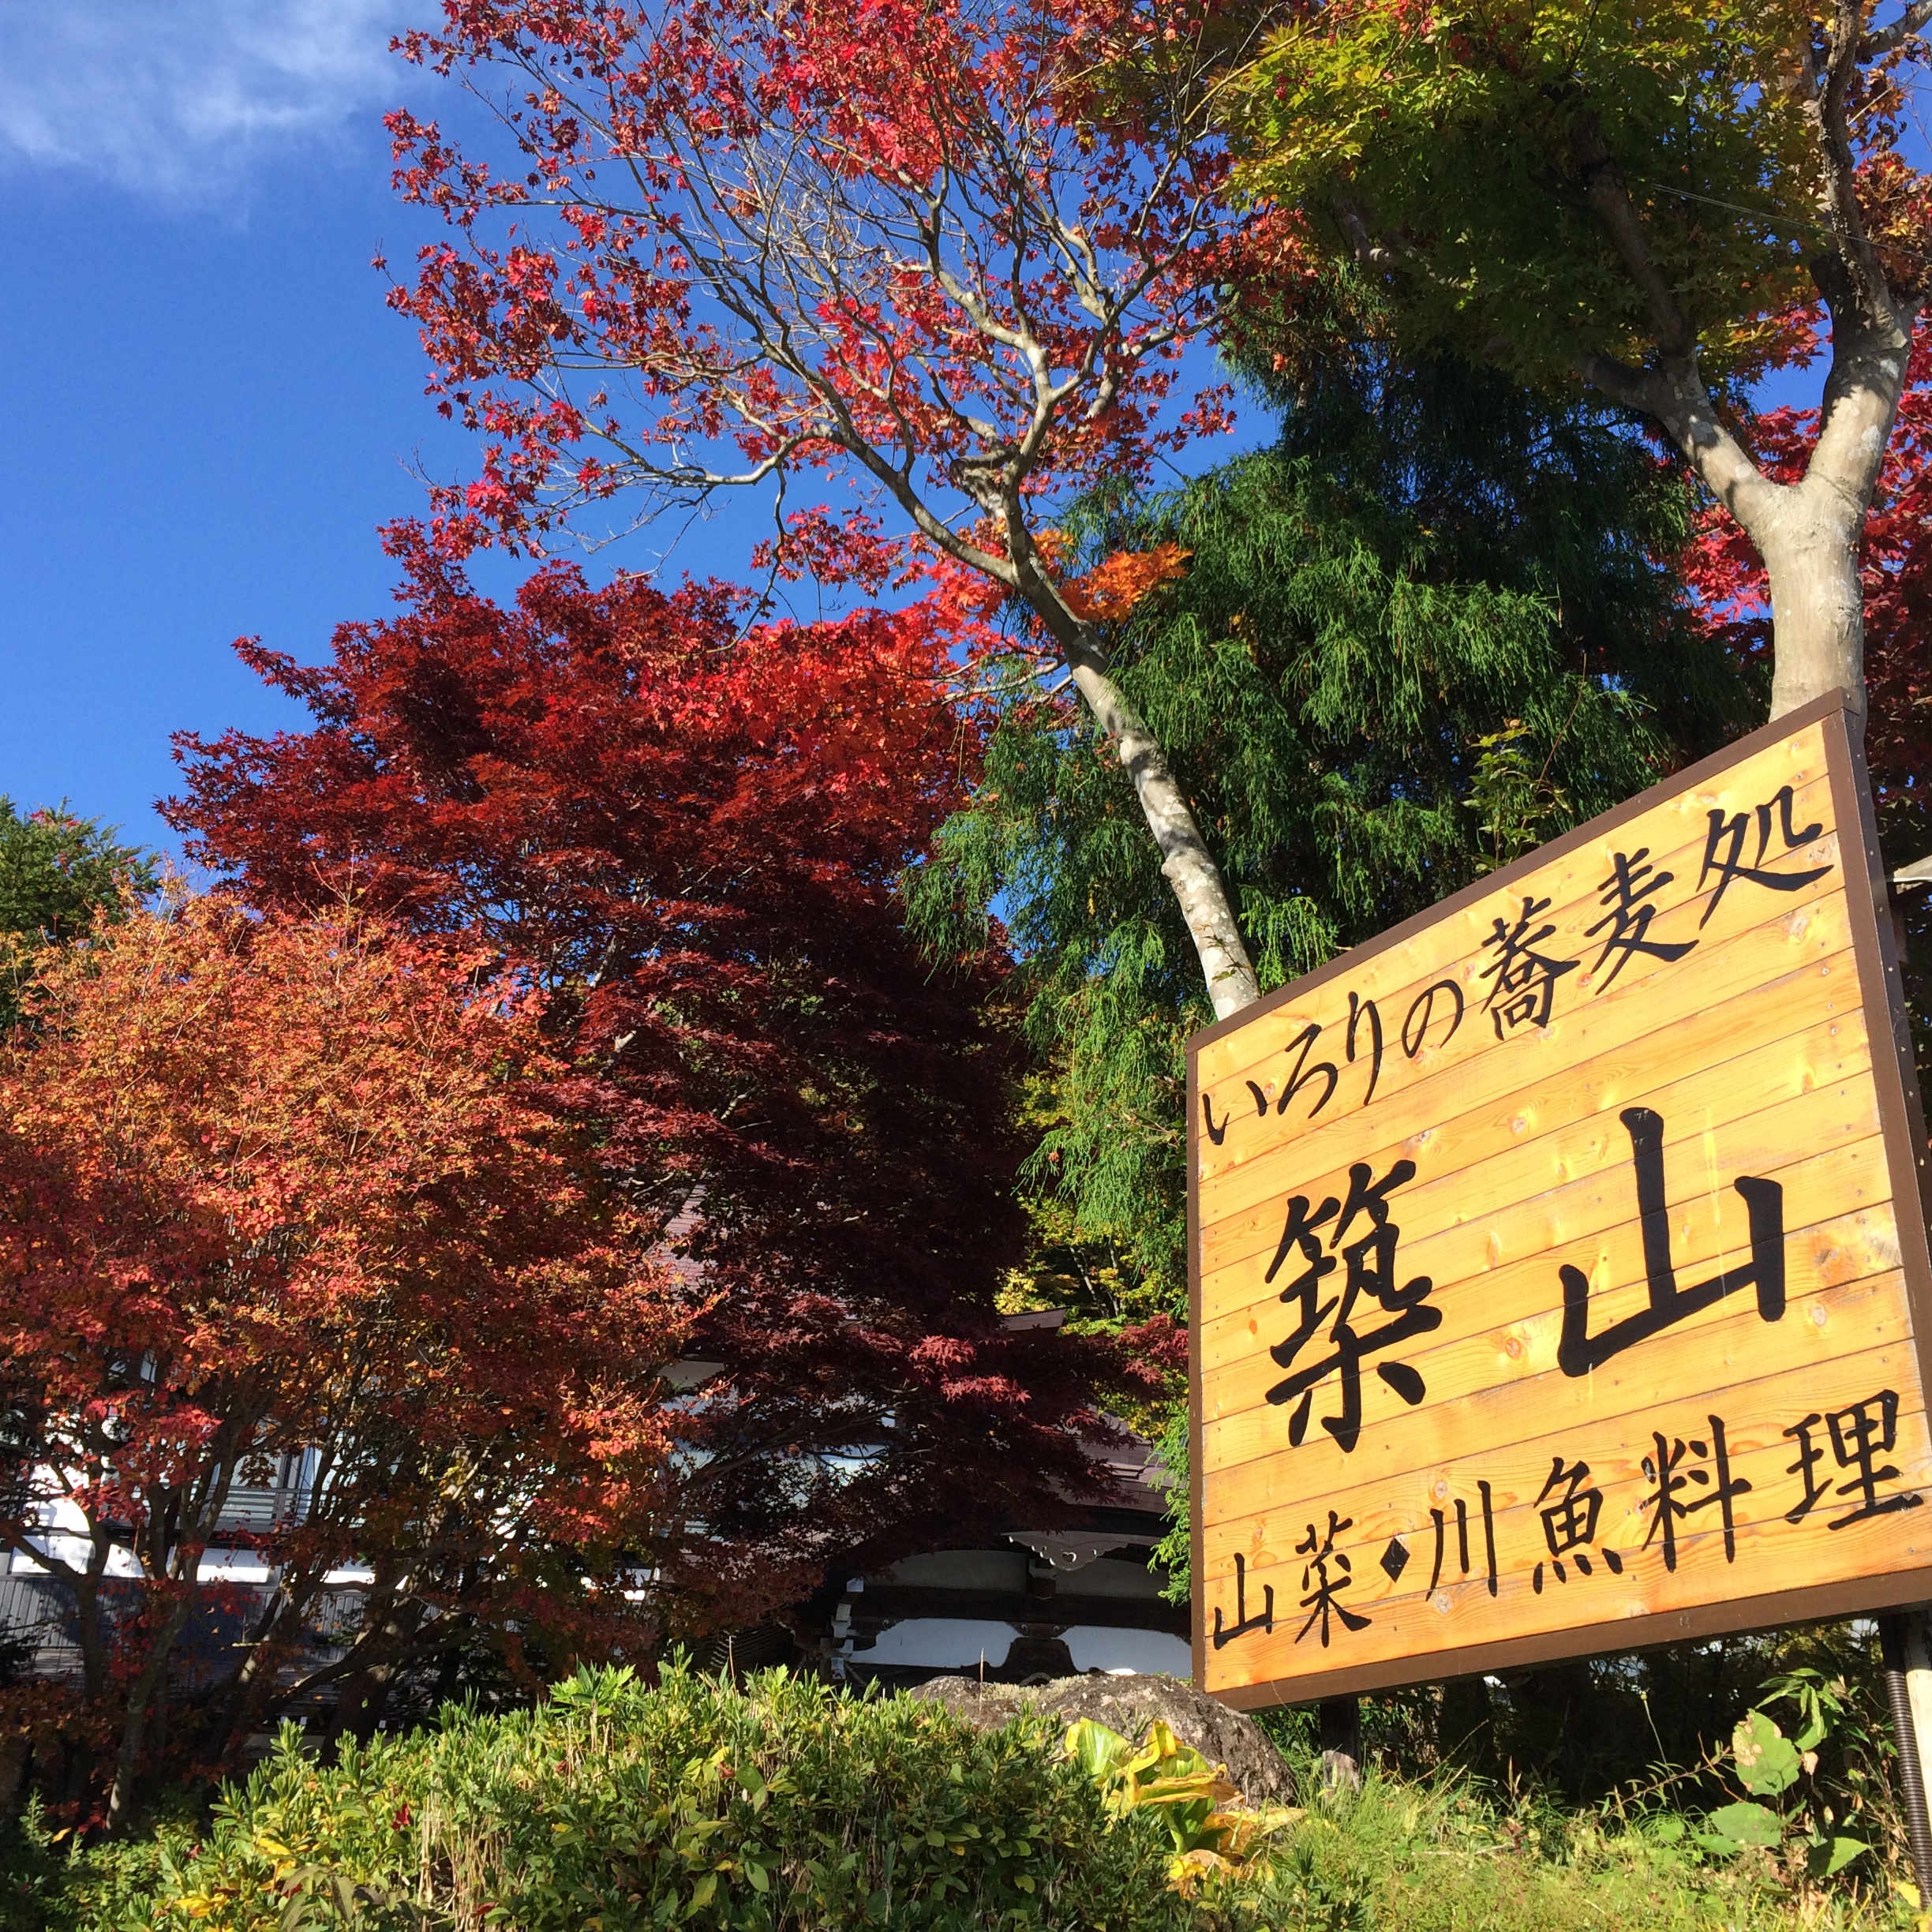 戸隠高原の紅葉が始まりました 公式 戸隠神社宿坊 いろりのそば処 築山館